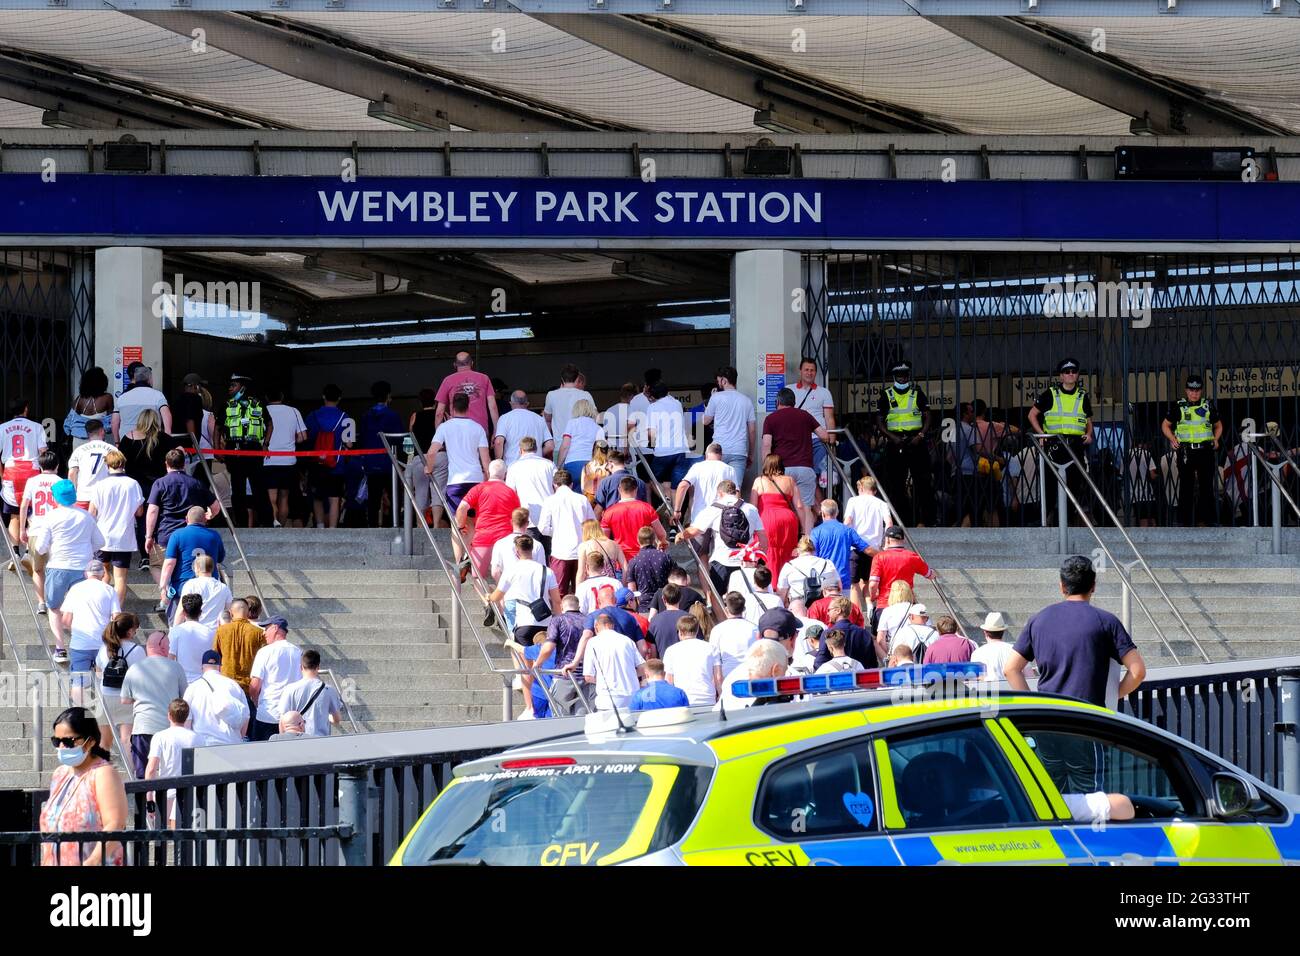 Londra, Regno Unito. Gli appassionati di calcio inglesi entrano nella stazione della metropolitana di Wembley Park dopo la prima partita di Euro 2020 contro la Croazia. Foto Stock